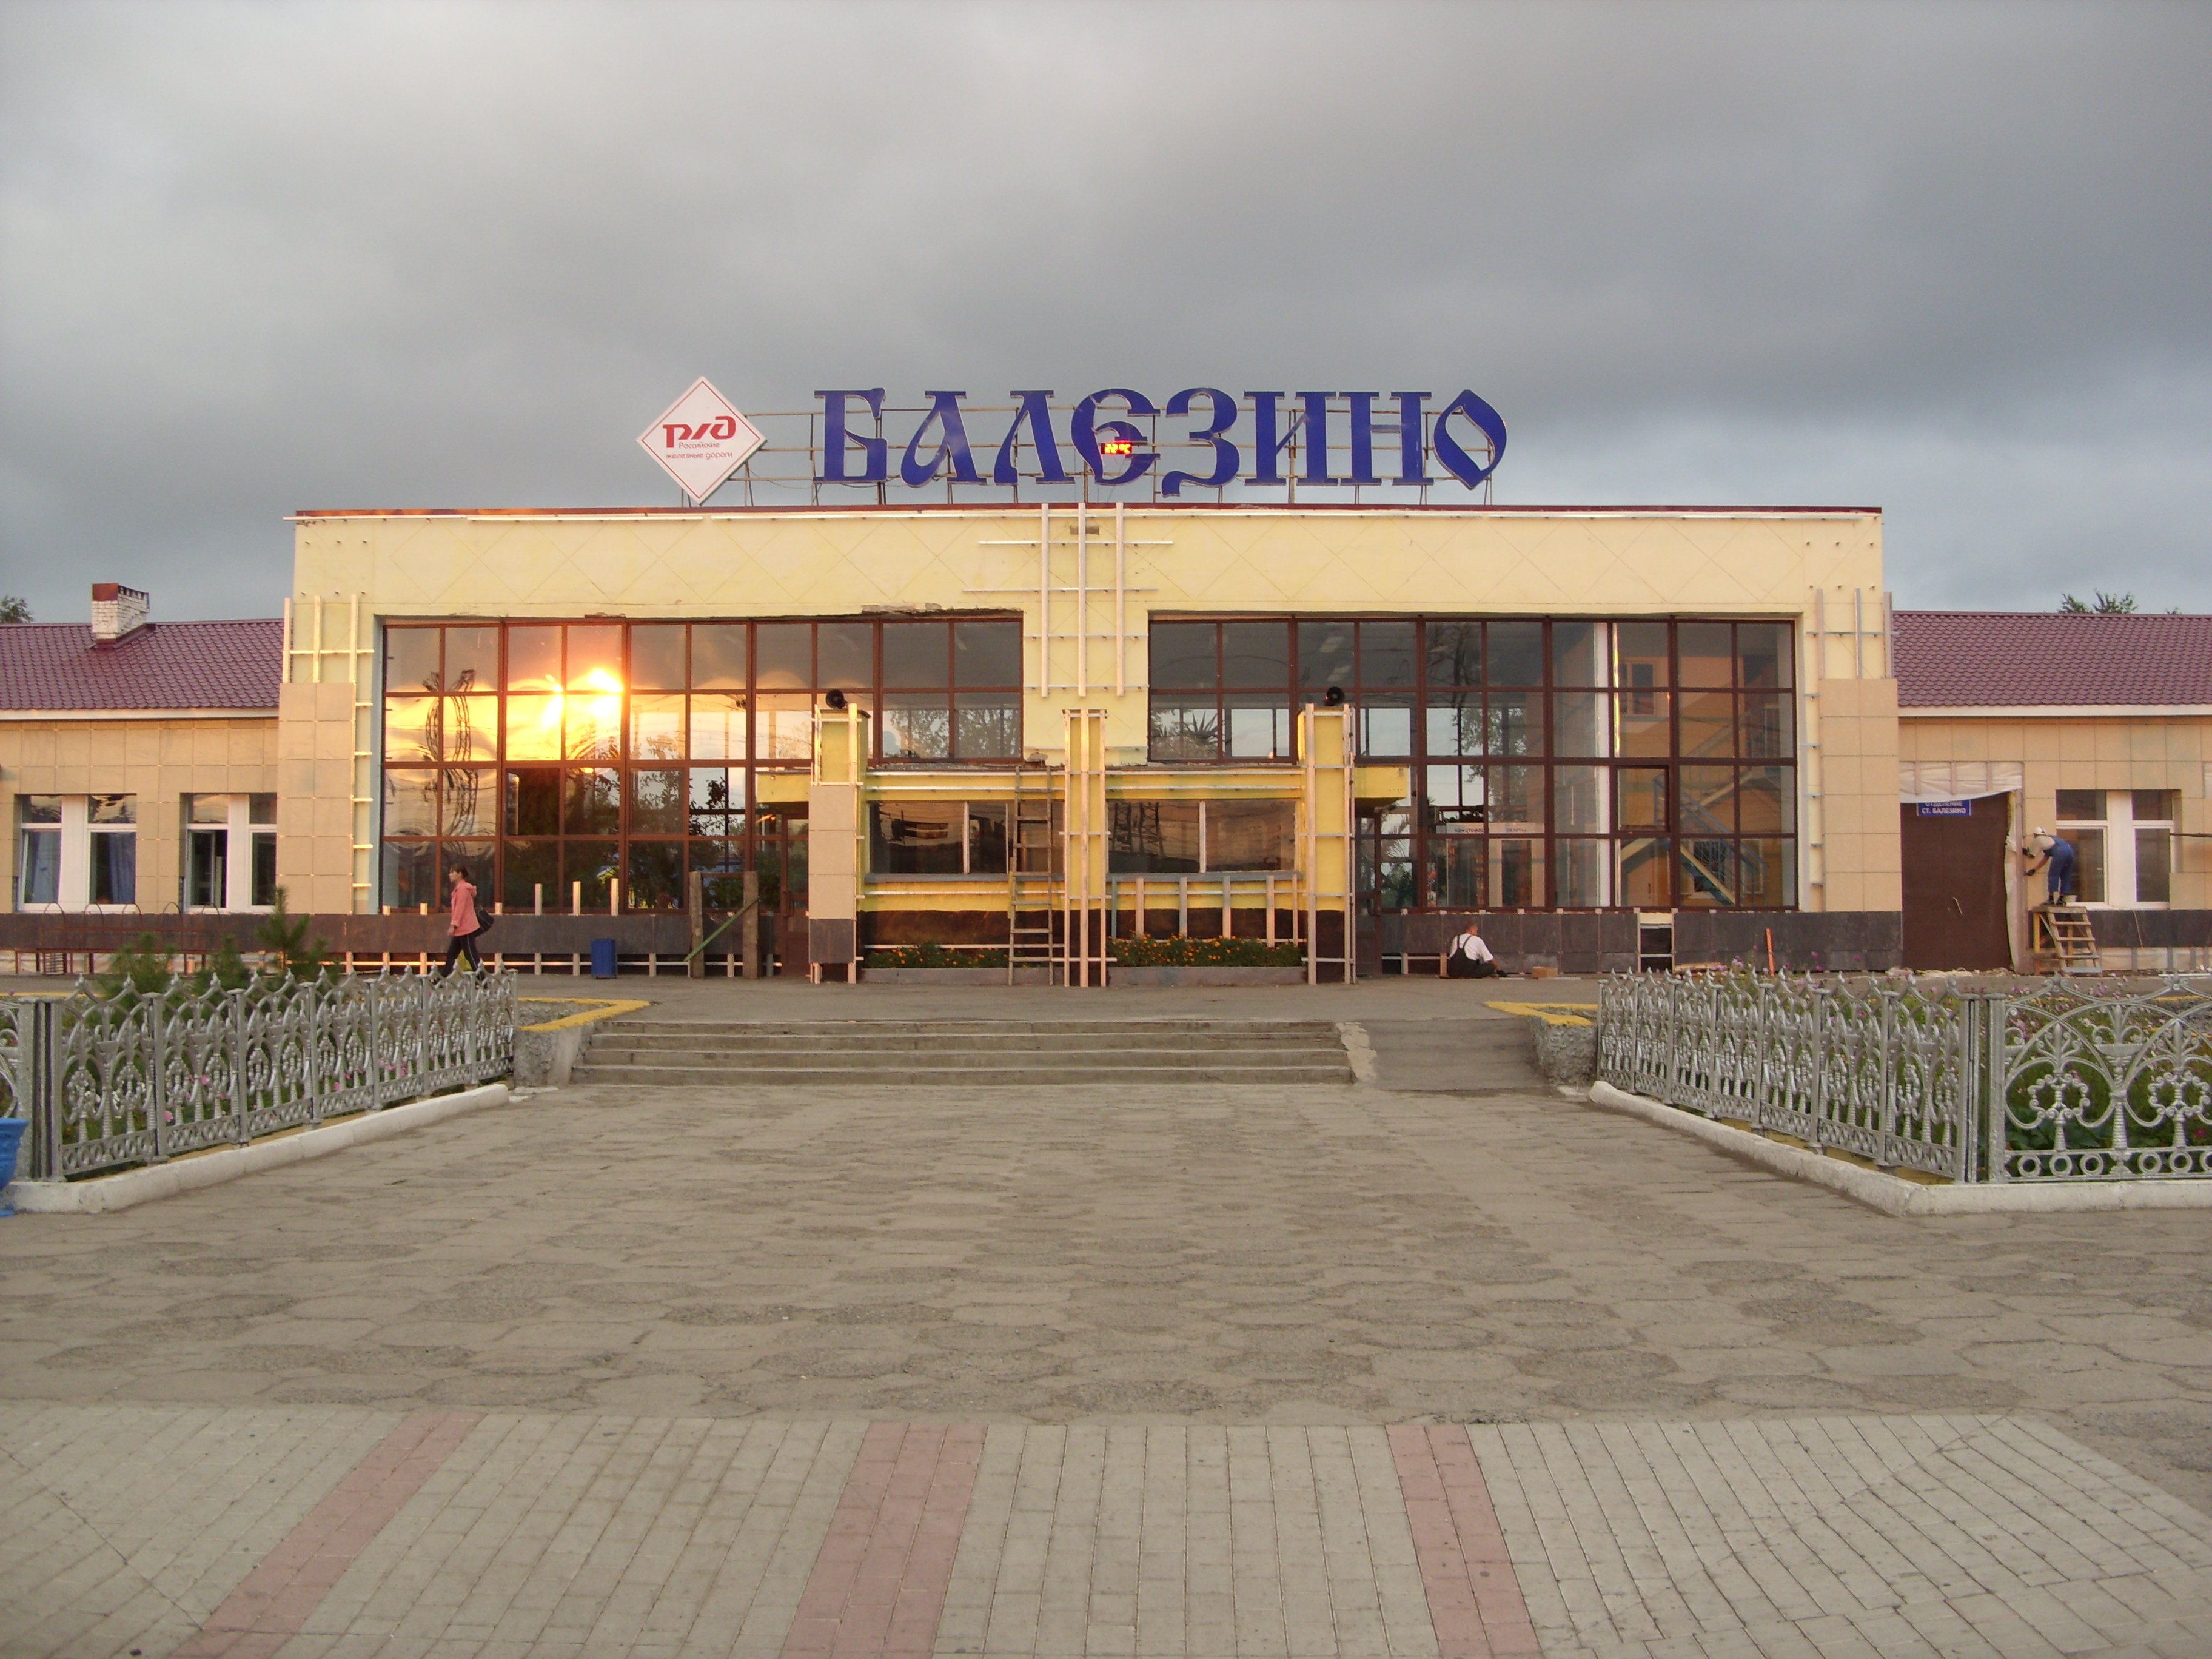 Порядка 4 млрд рублей потратят РЖД на реконструкцию станции Балезино